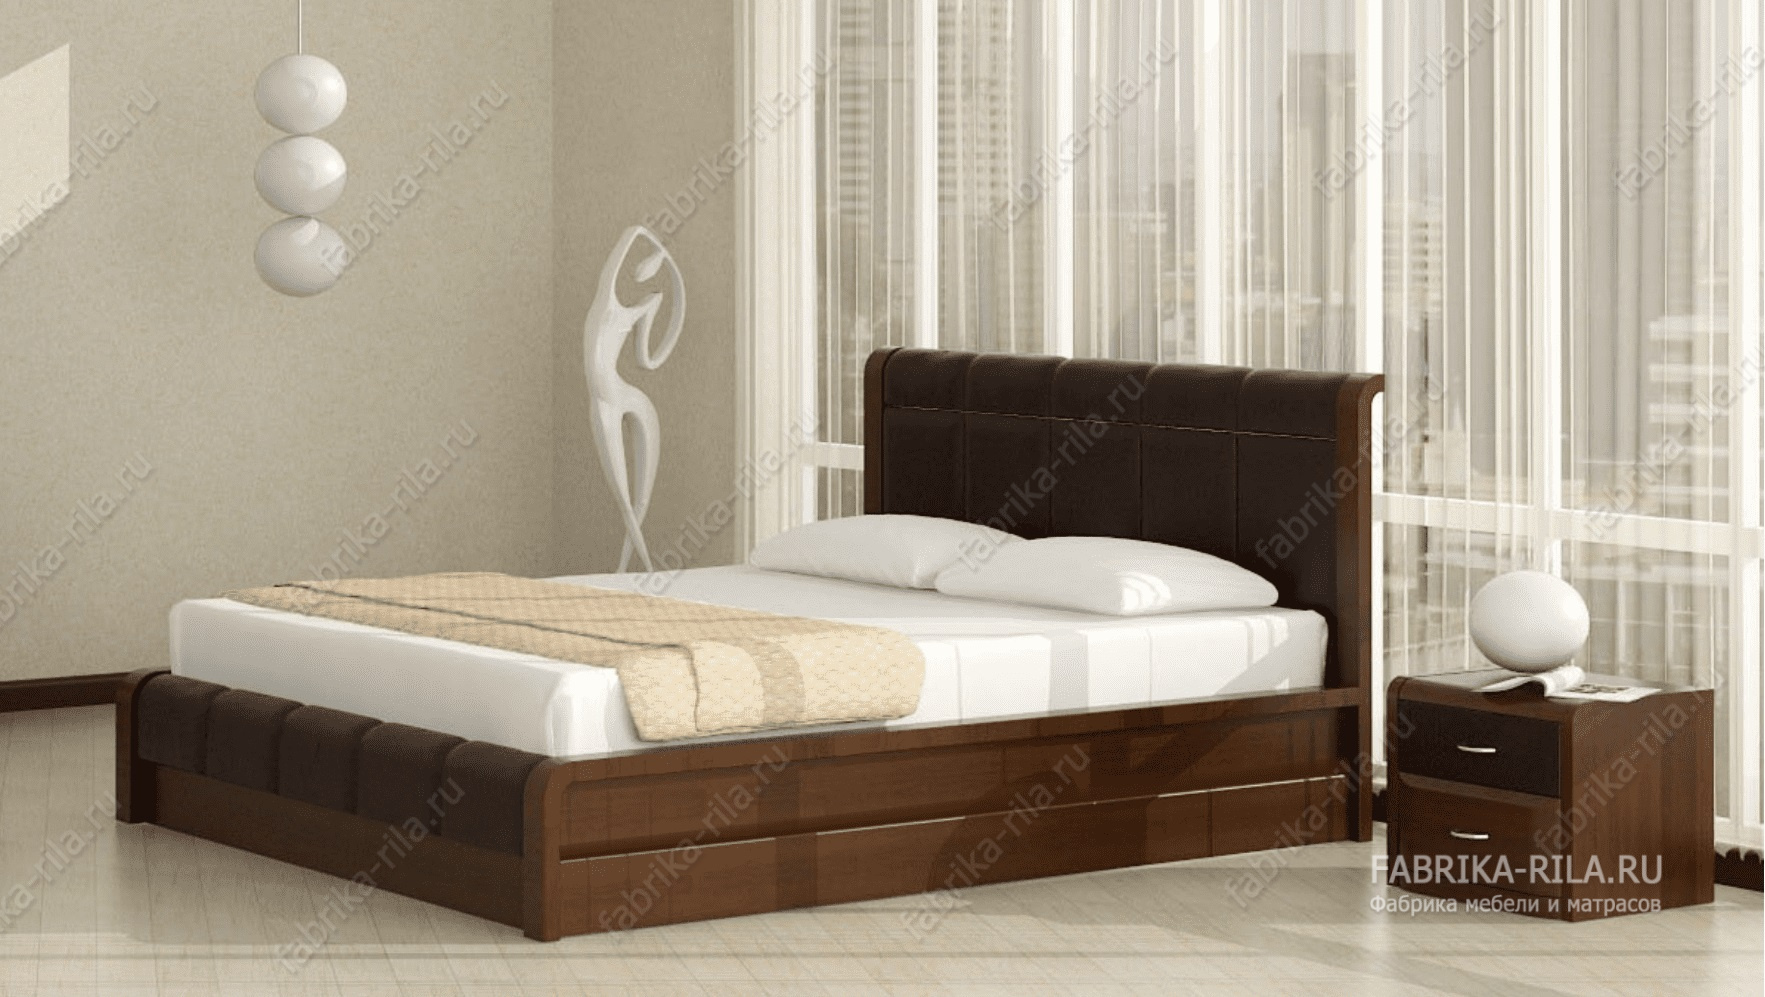 Кровать Arikama 2 — 90x190 см. из сосны